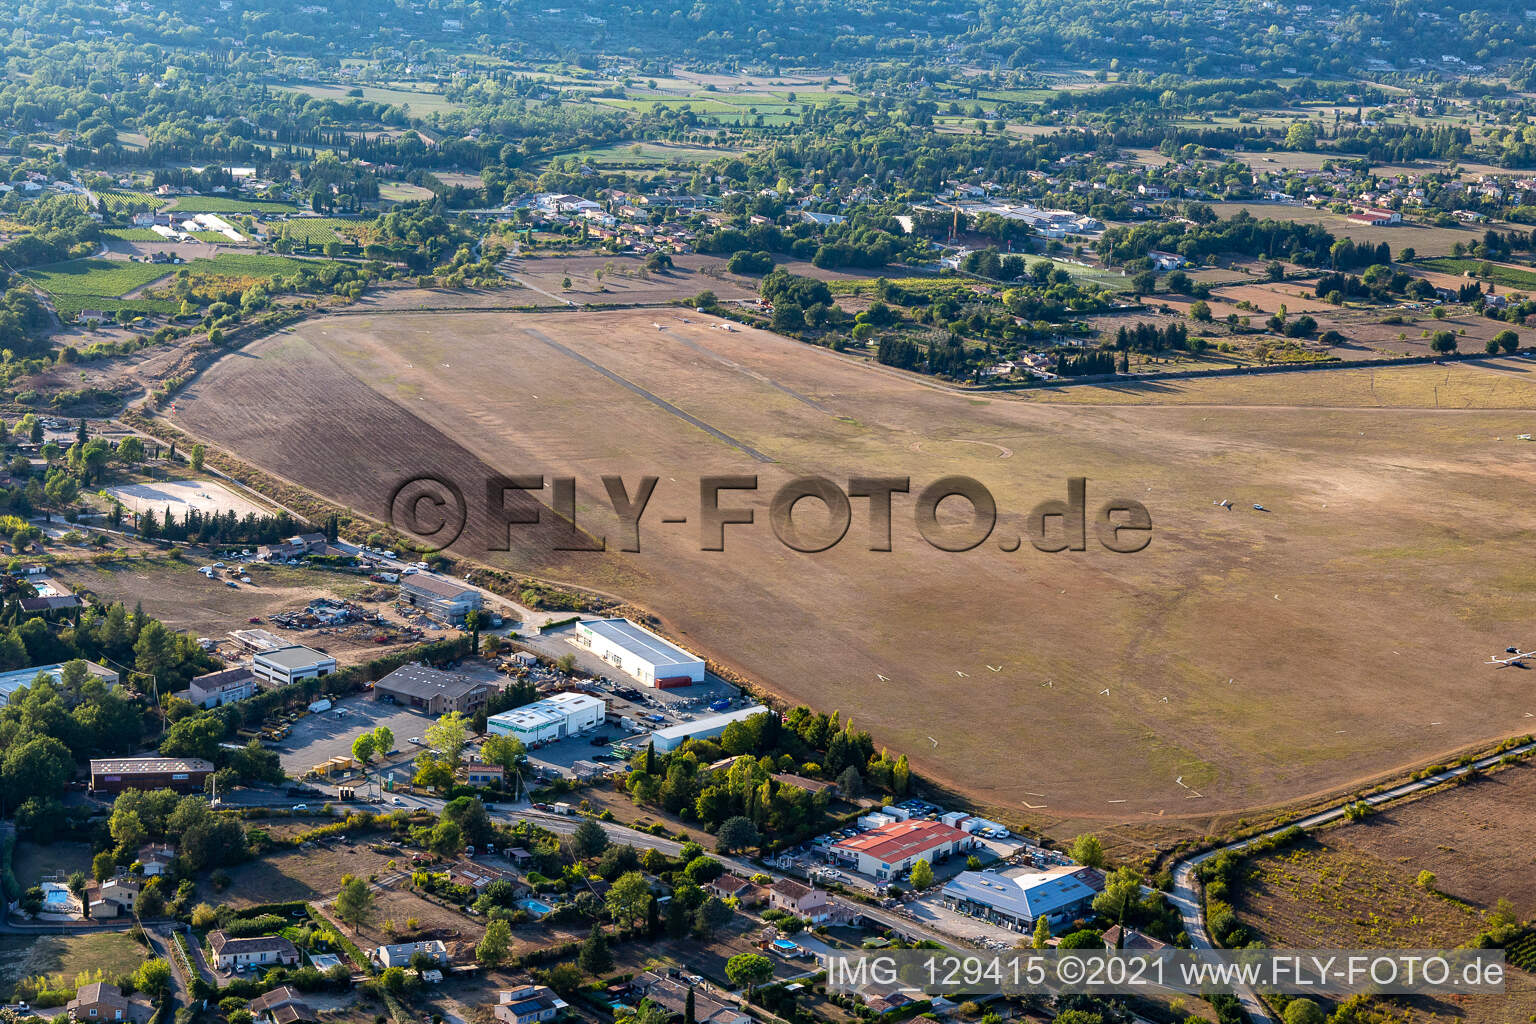 Vue aérienne de Aérodrome de Tourrette à Fayence dans le département Var, France